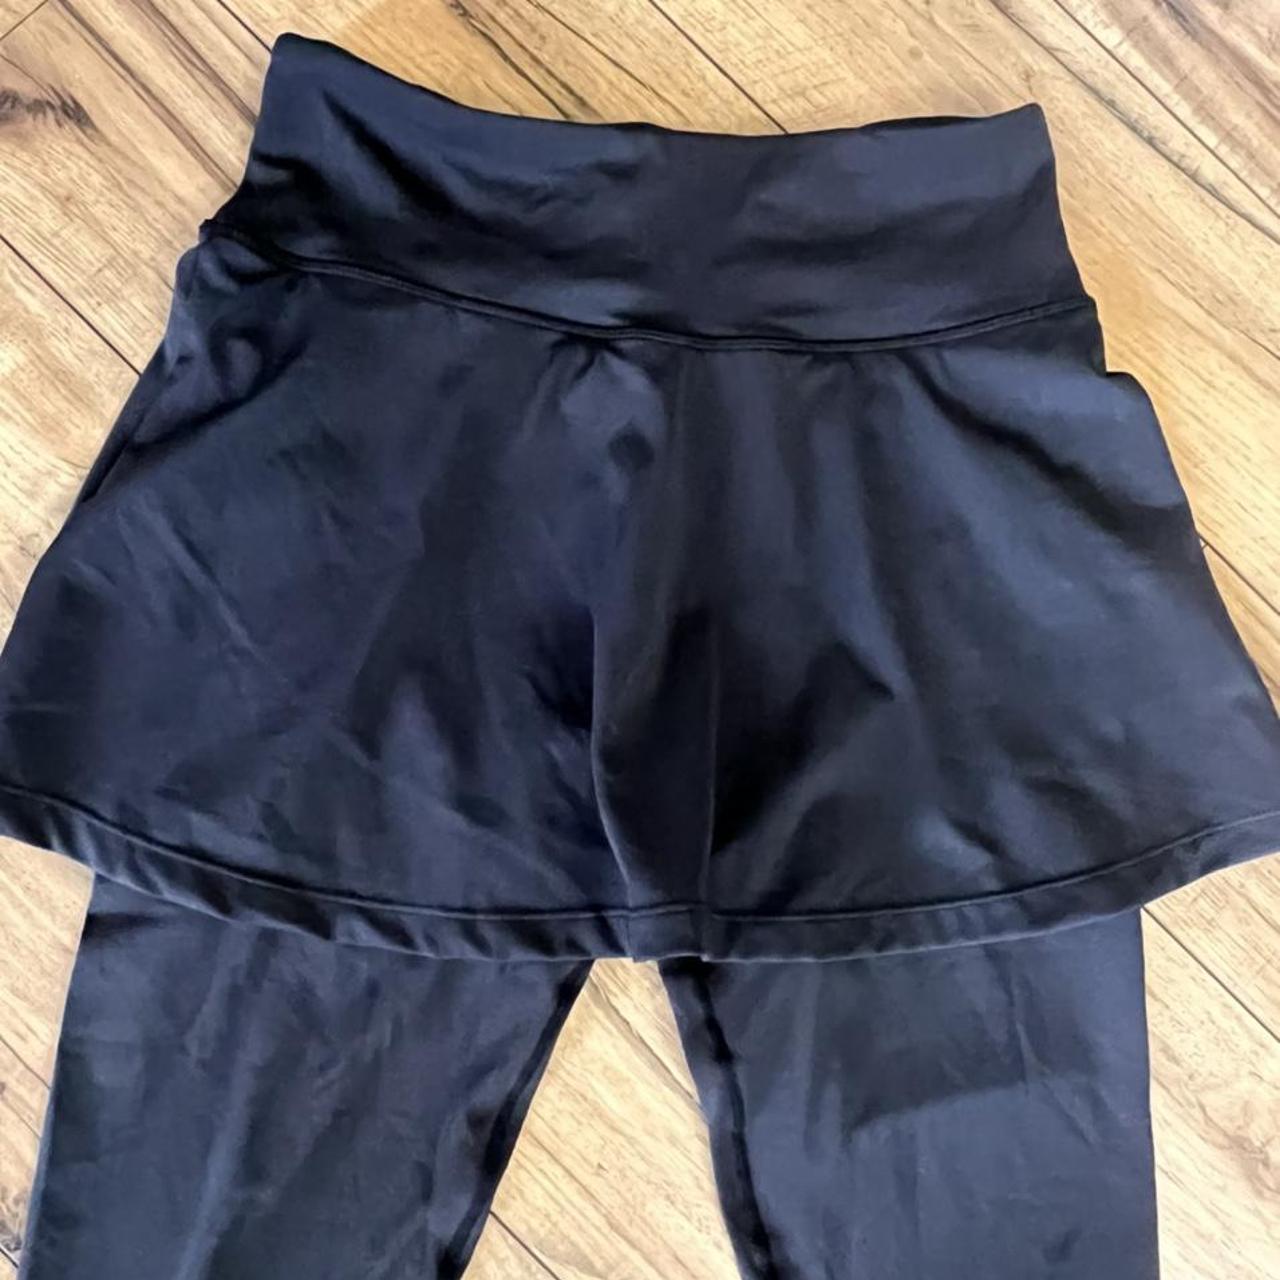 Anivivo size medium black skirted leggings in - Depop